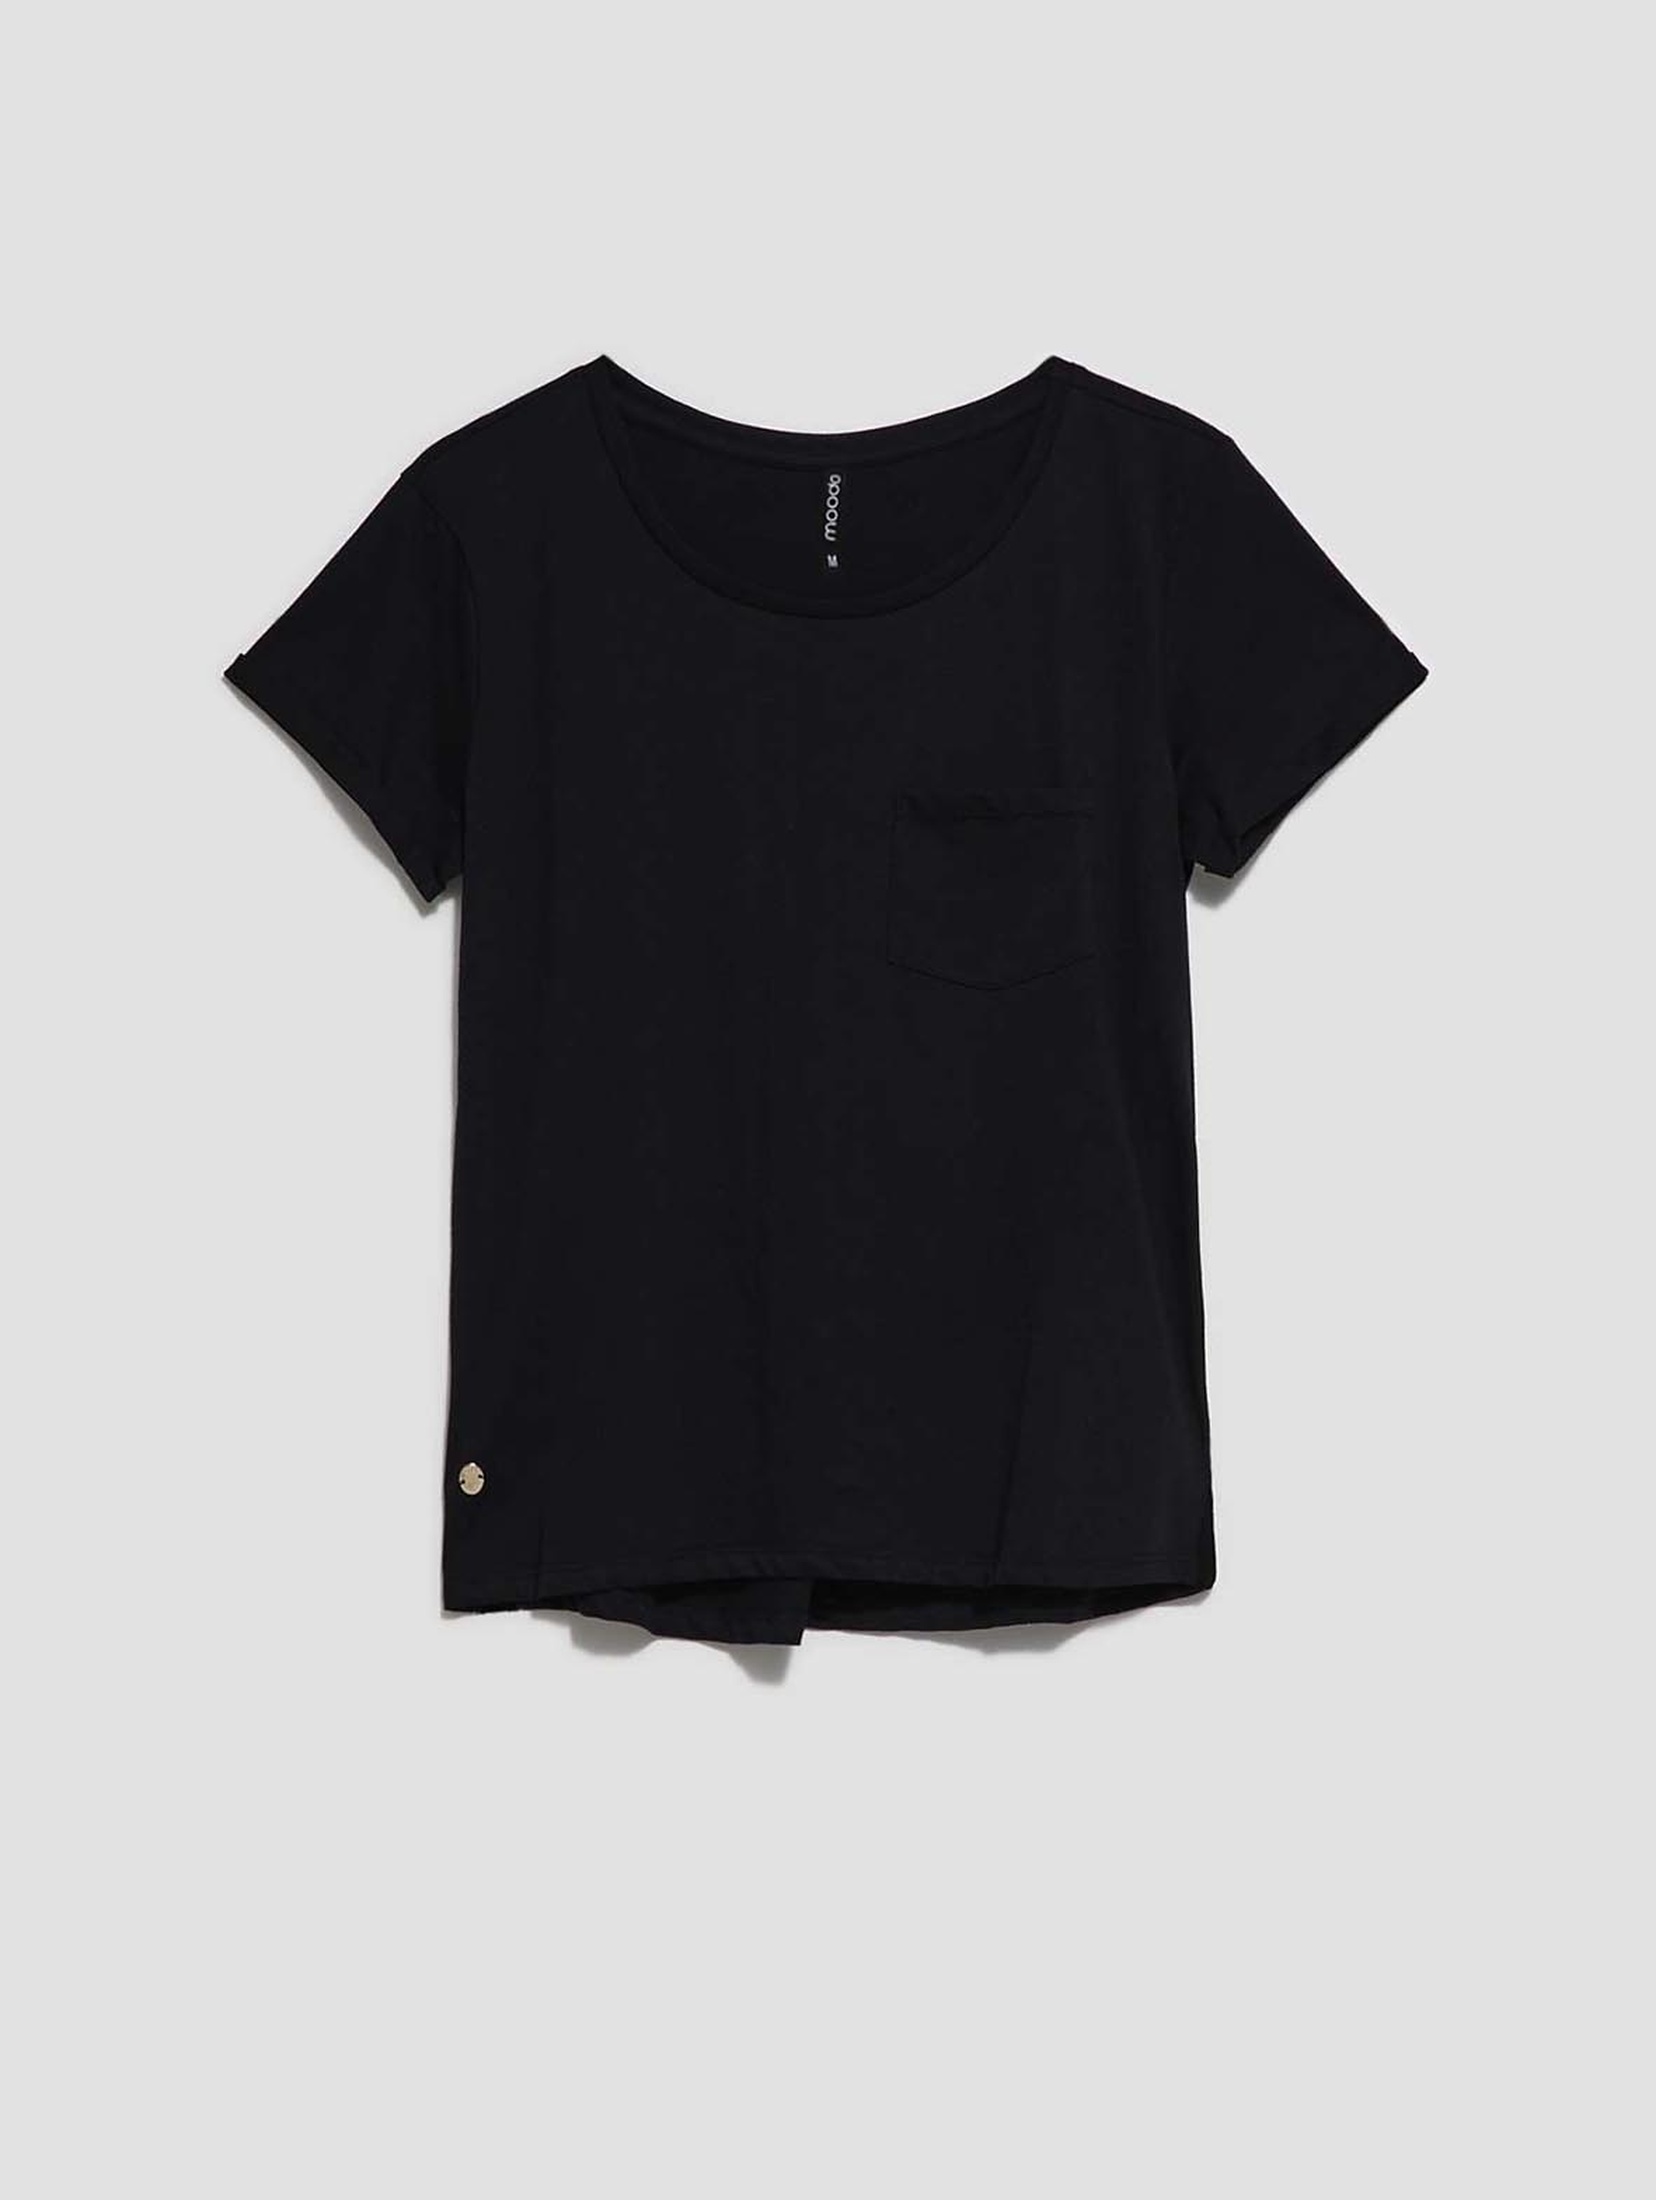 Bawełniany czarny t-shirt damski z kieszonką